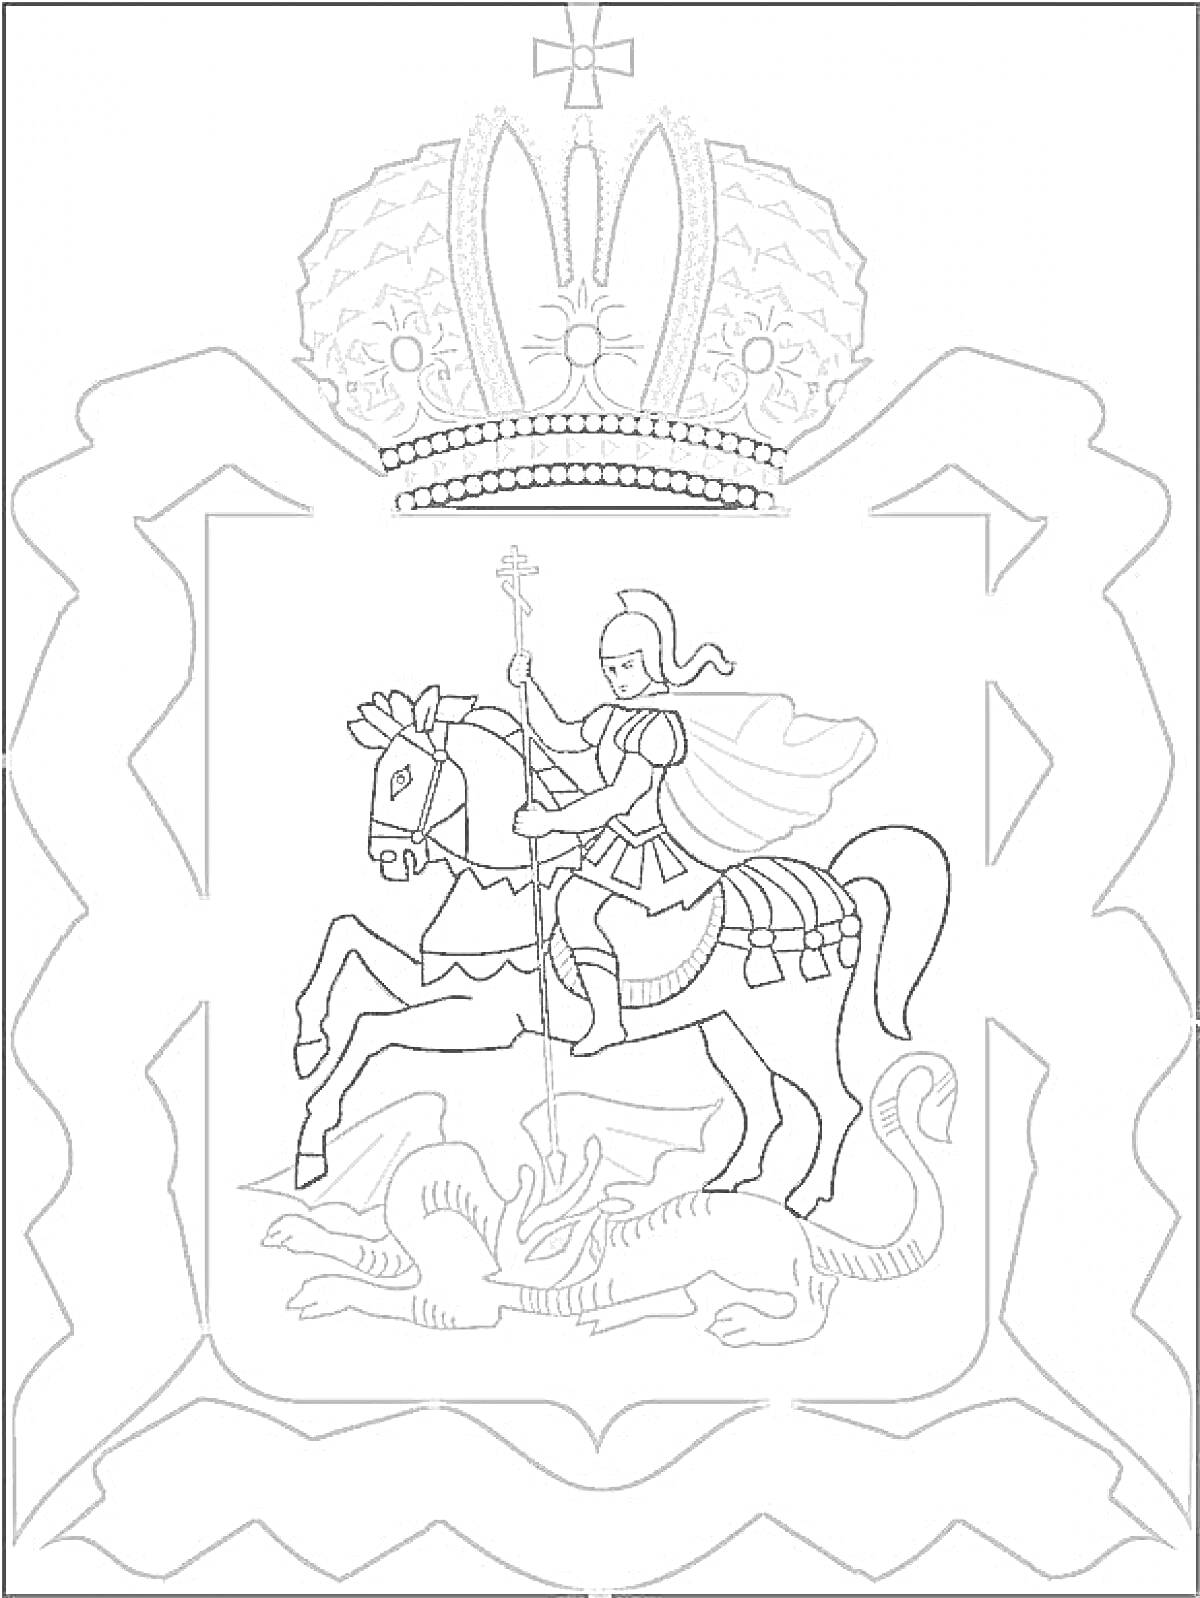 Раскраска Герб России с изображением Георгия Победоносца, поражающего дракона, и императорской короны наверху.